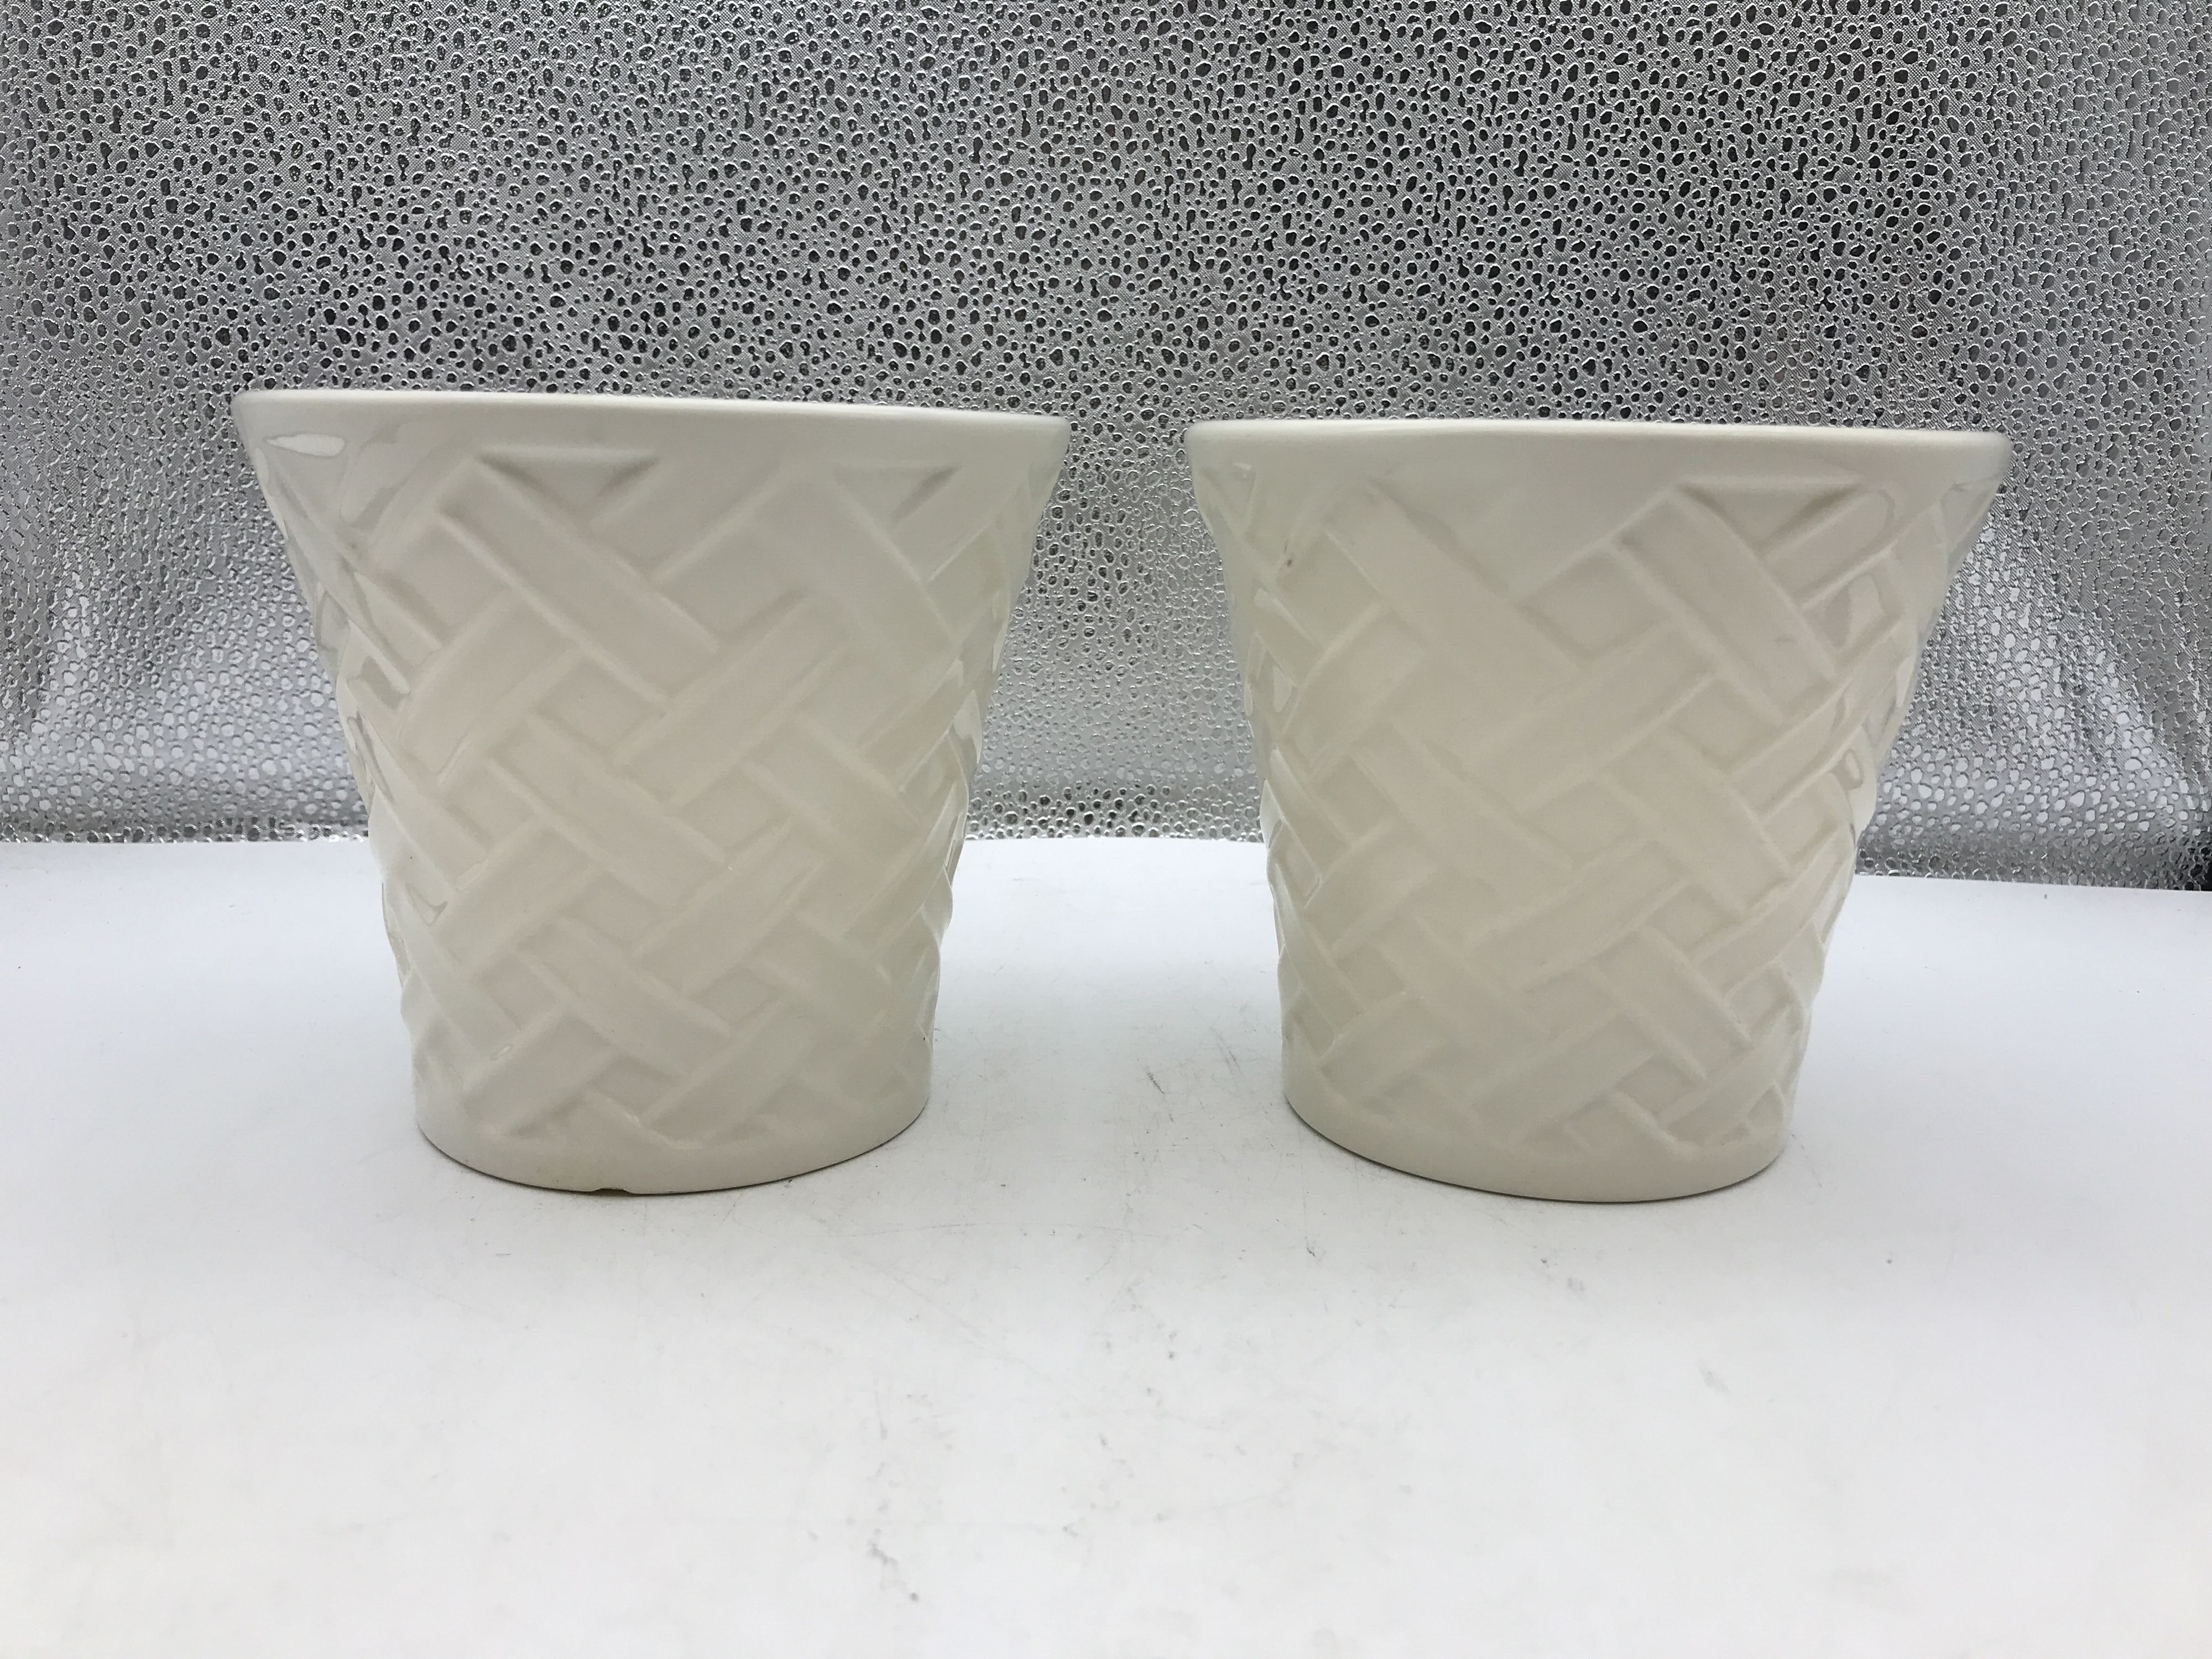 Bath & Body Works Ceramic Cream Colored Basketweave Design Small Planters